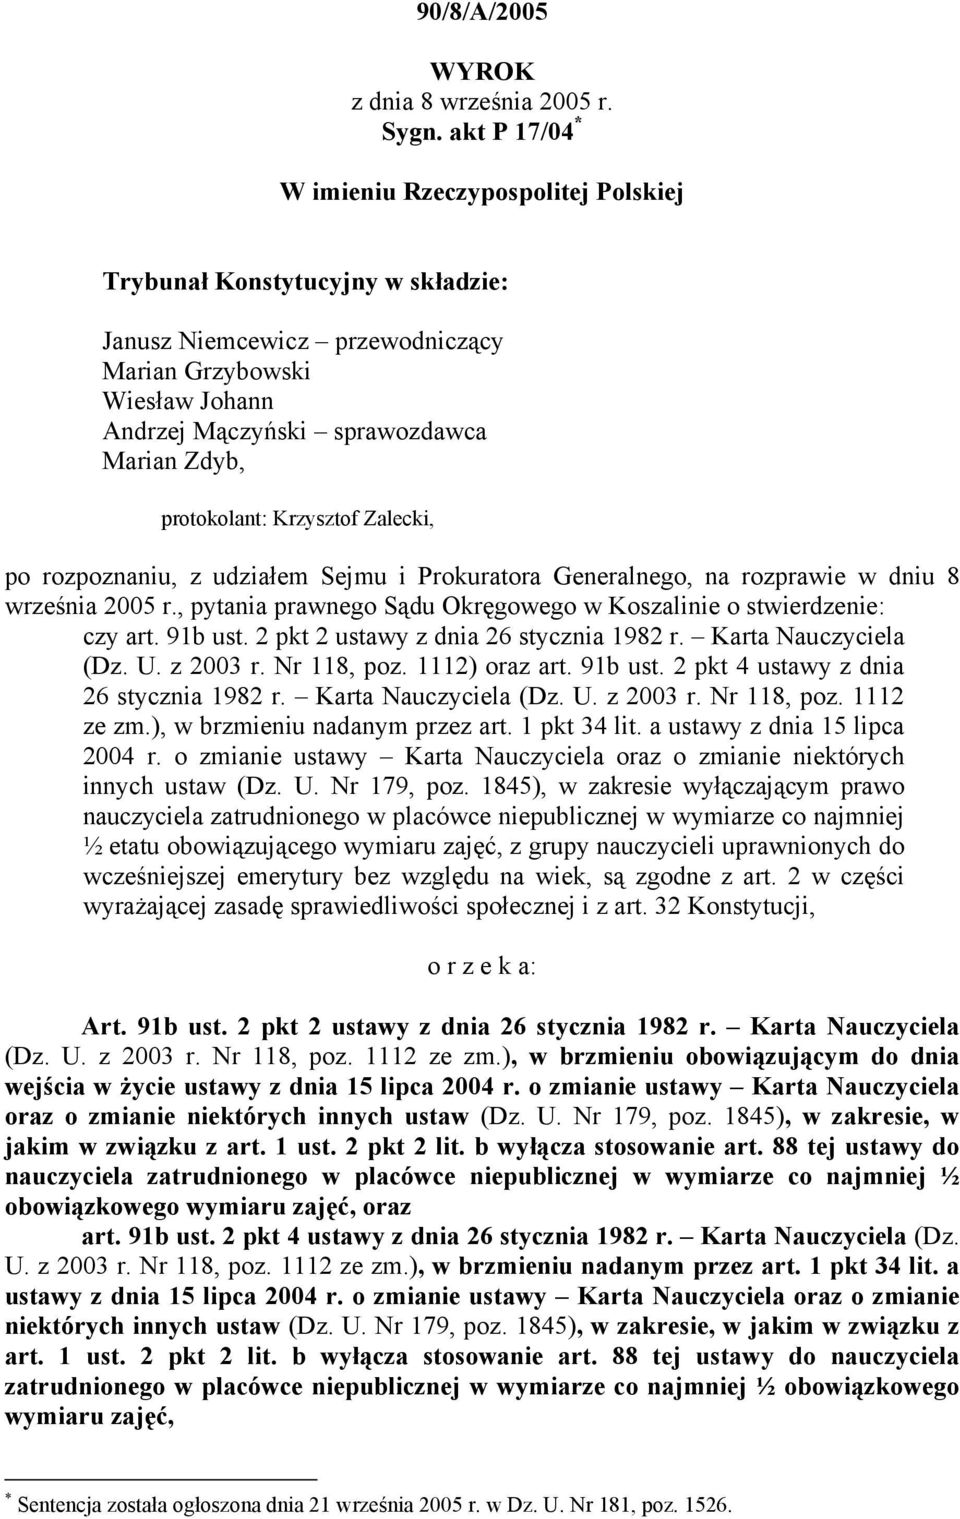 protokolant: Krzysztof Zalecki, po rozpoznaniu, z udziałem Sejmu i Prokuratora Generalnego, na rozprawie w dniu 8 września 2005 r.